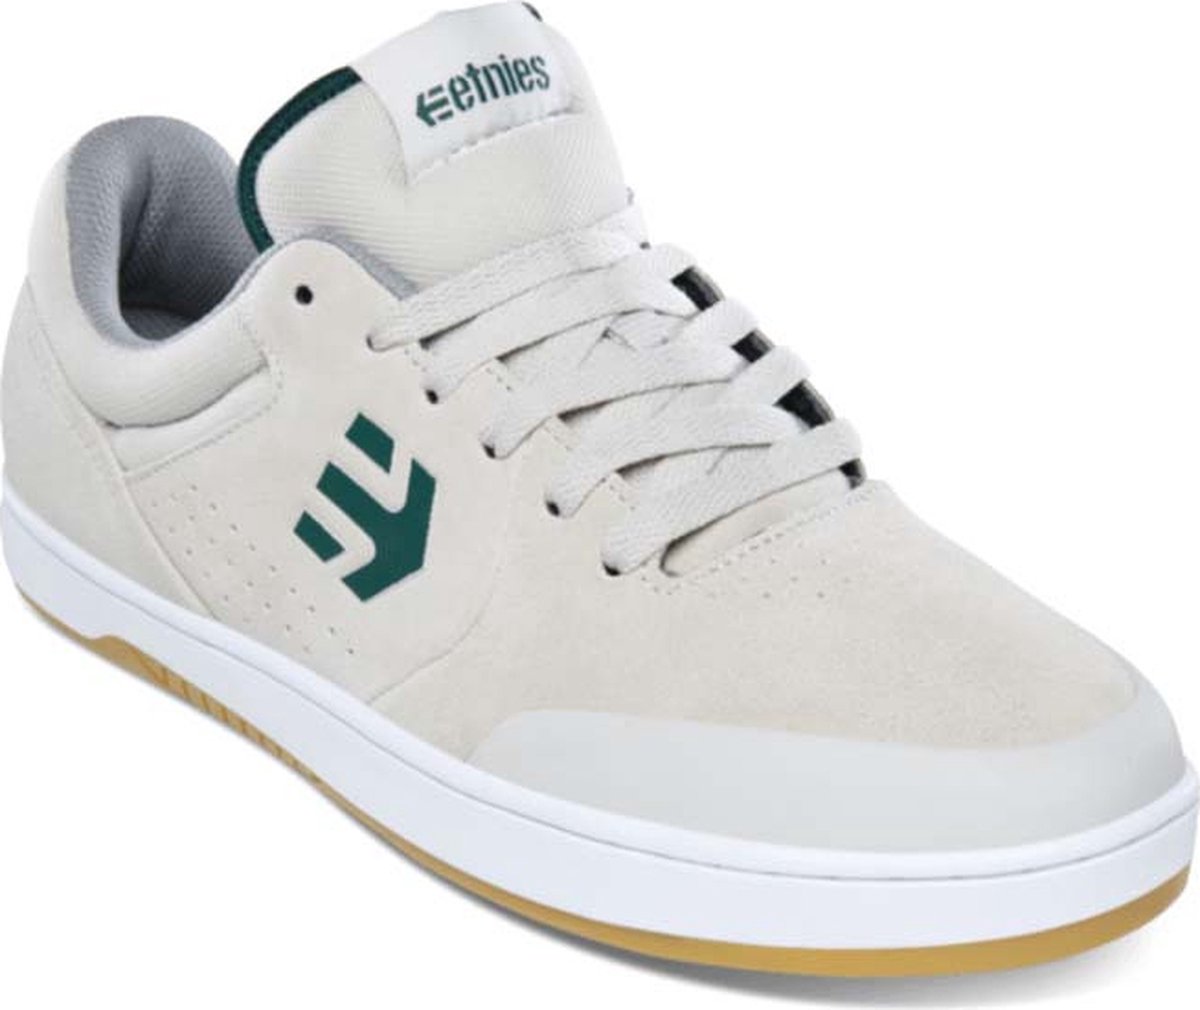 Etnies - Marana - Maat 42 - Wit - Groen - Skate schoen - Casual schoen